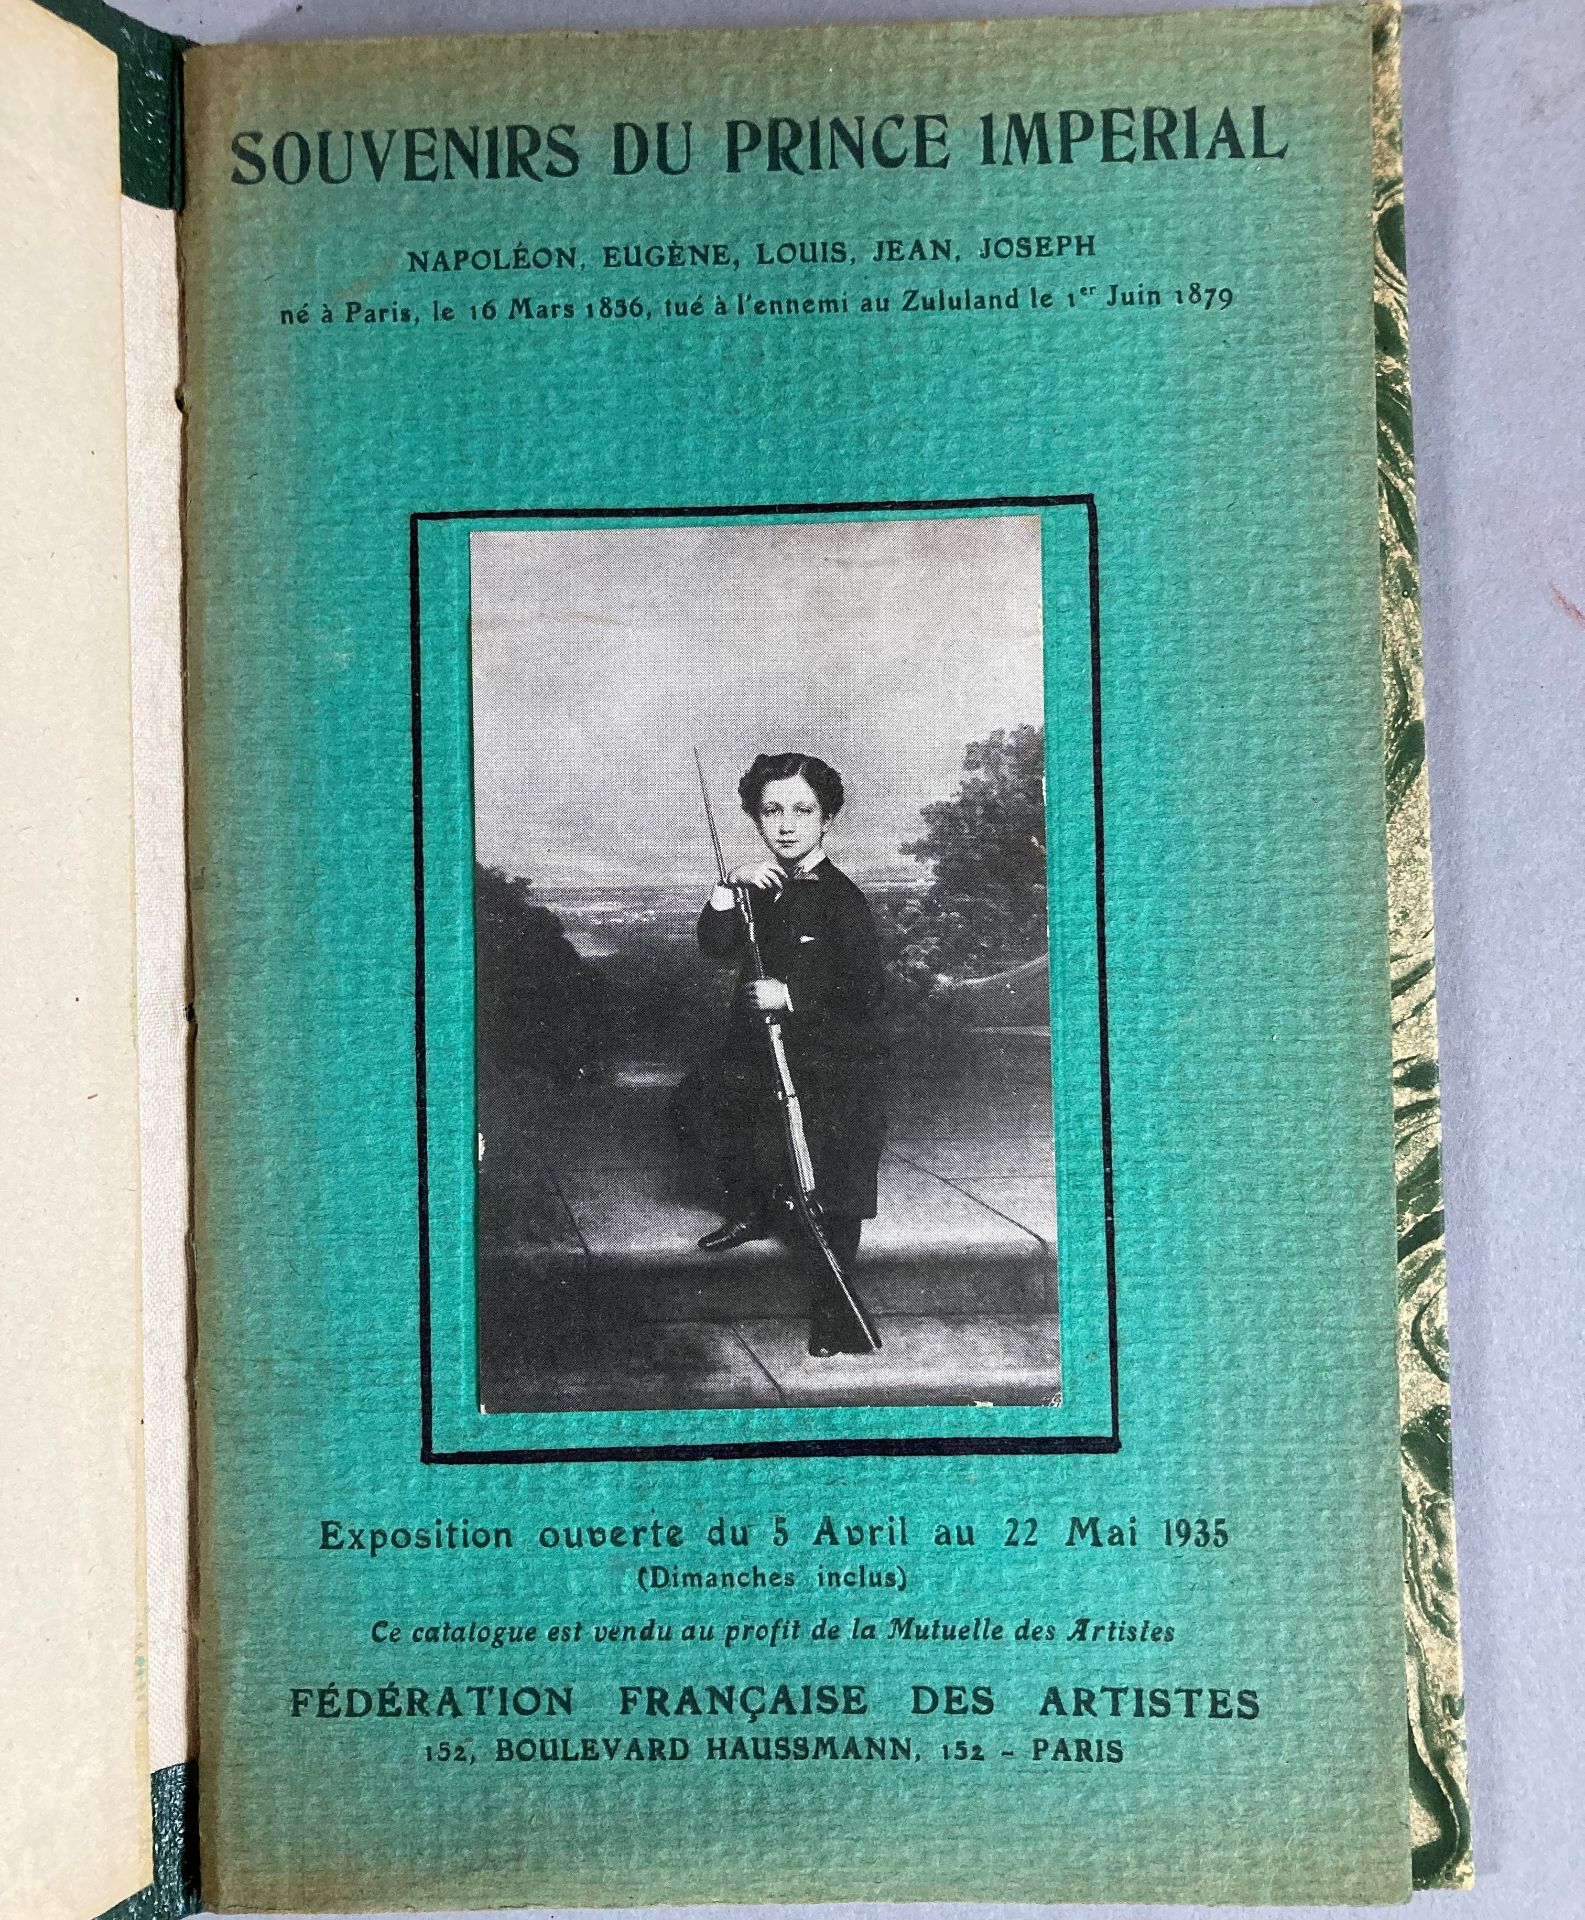 Souvenirs du Prince Impérial.1836-1879. Catalogue de l’exposition de mai 1935. Exemplaire relié